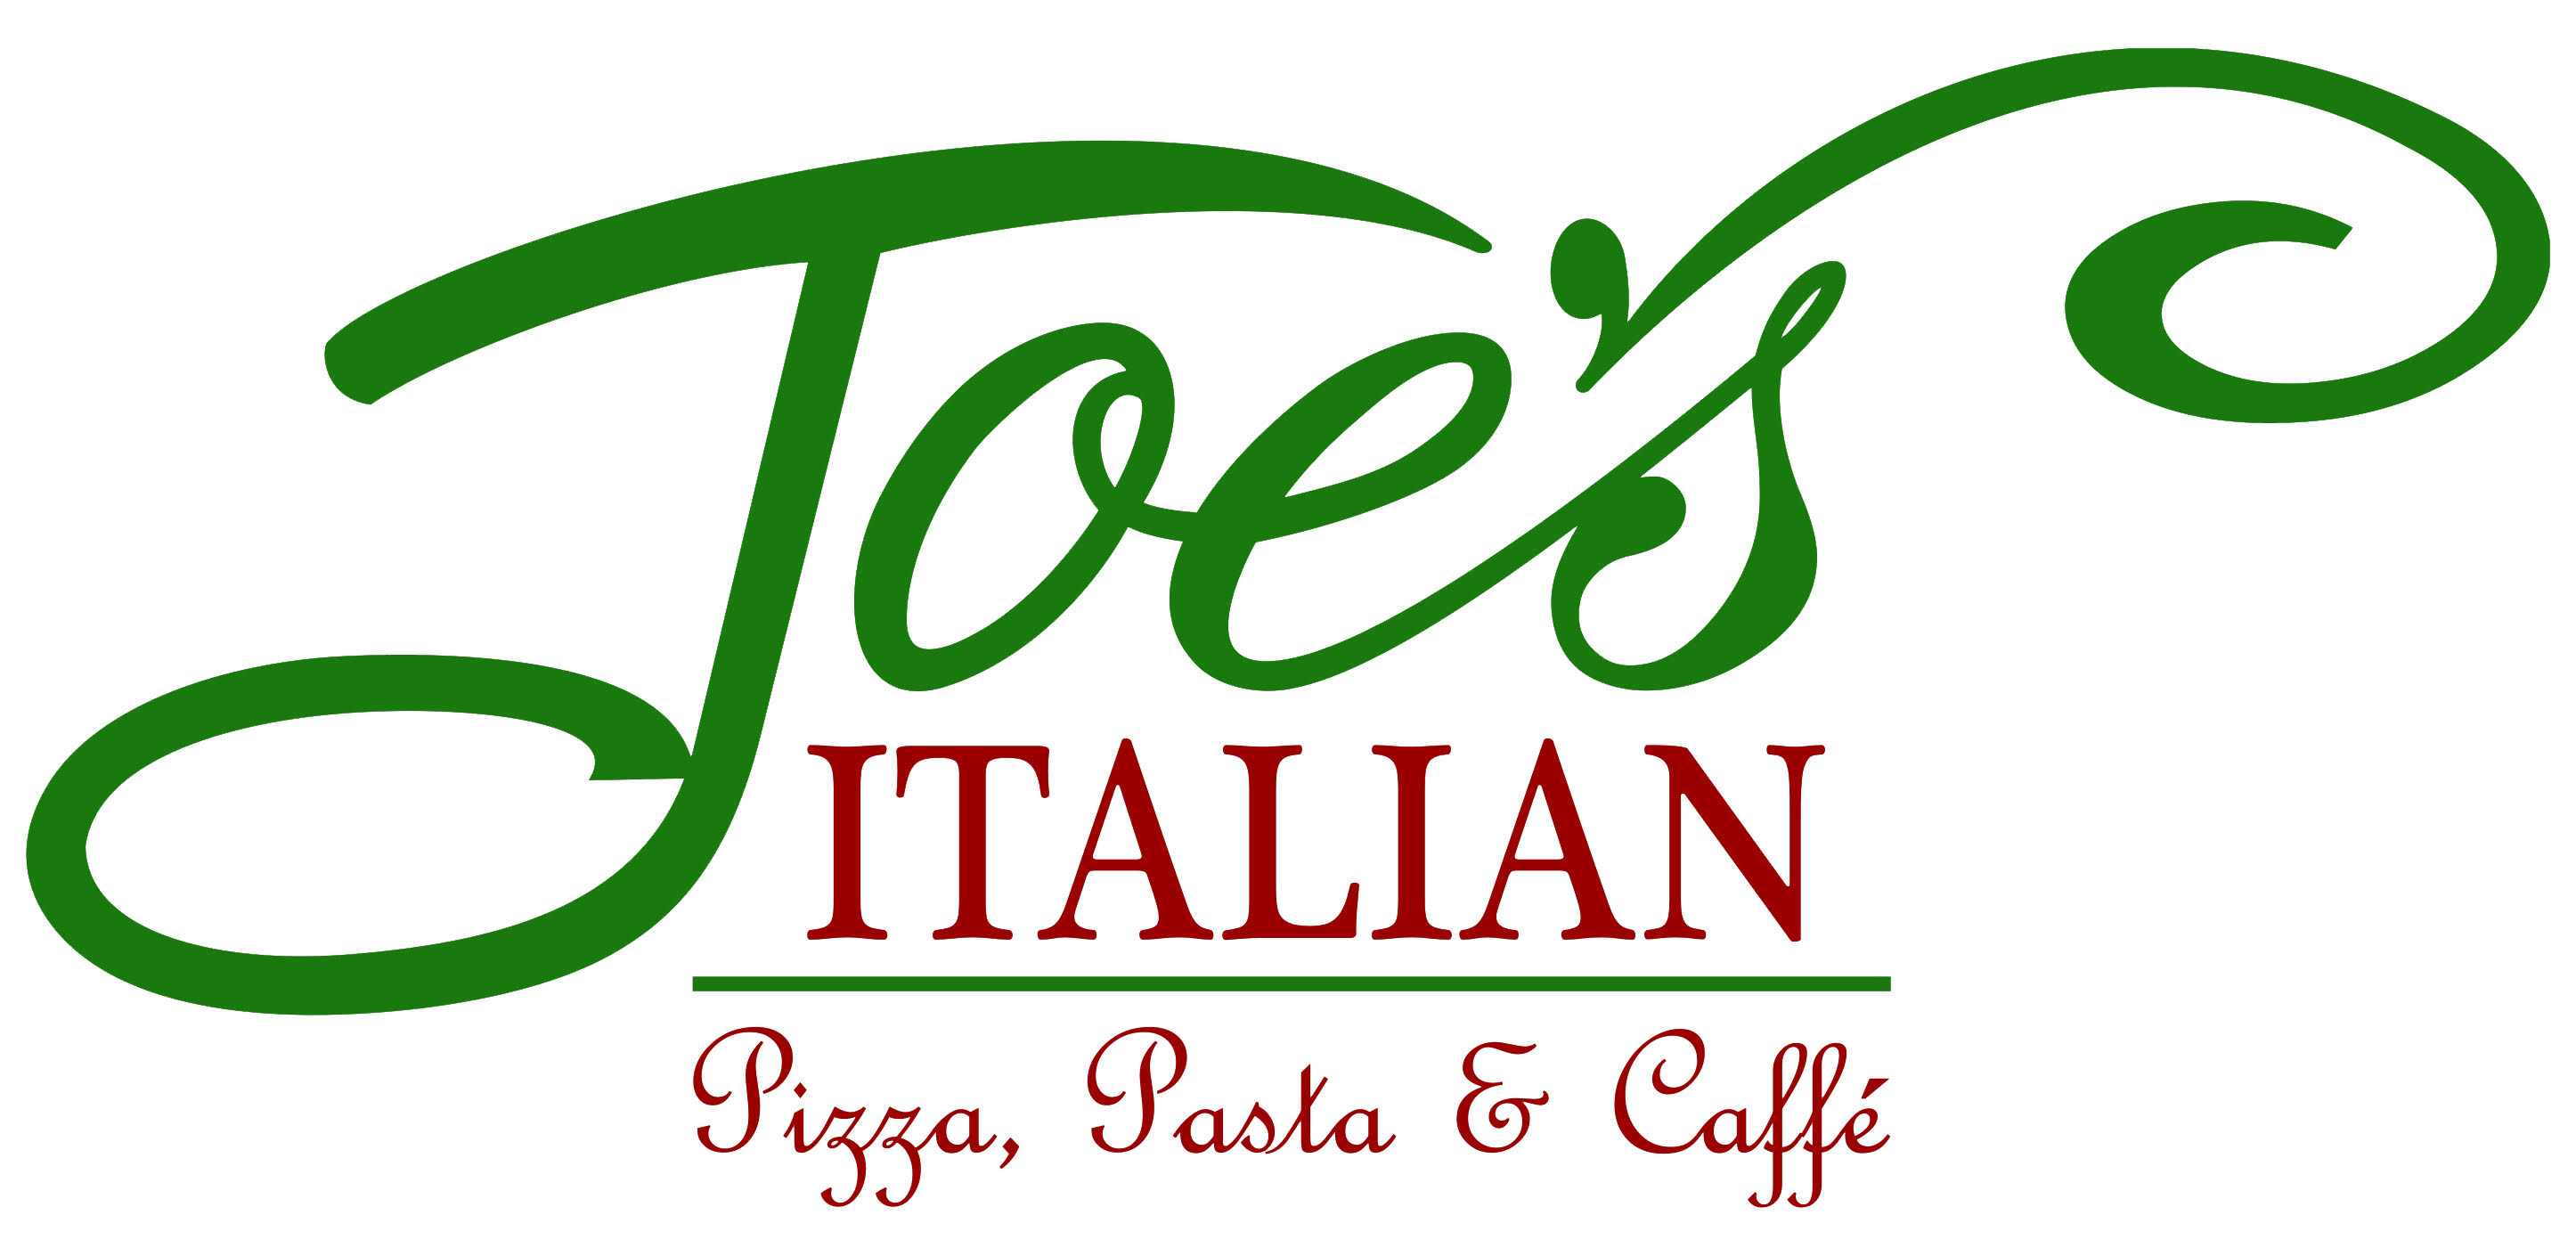 Joe’s Italian